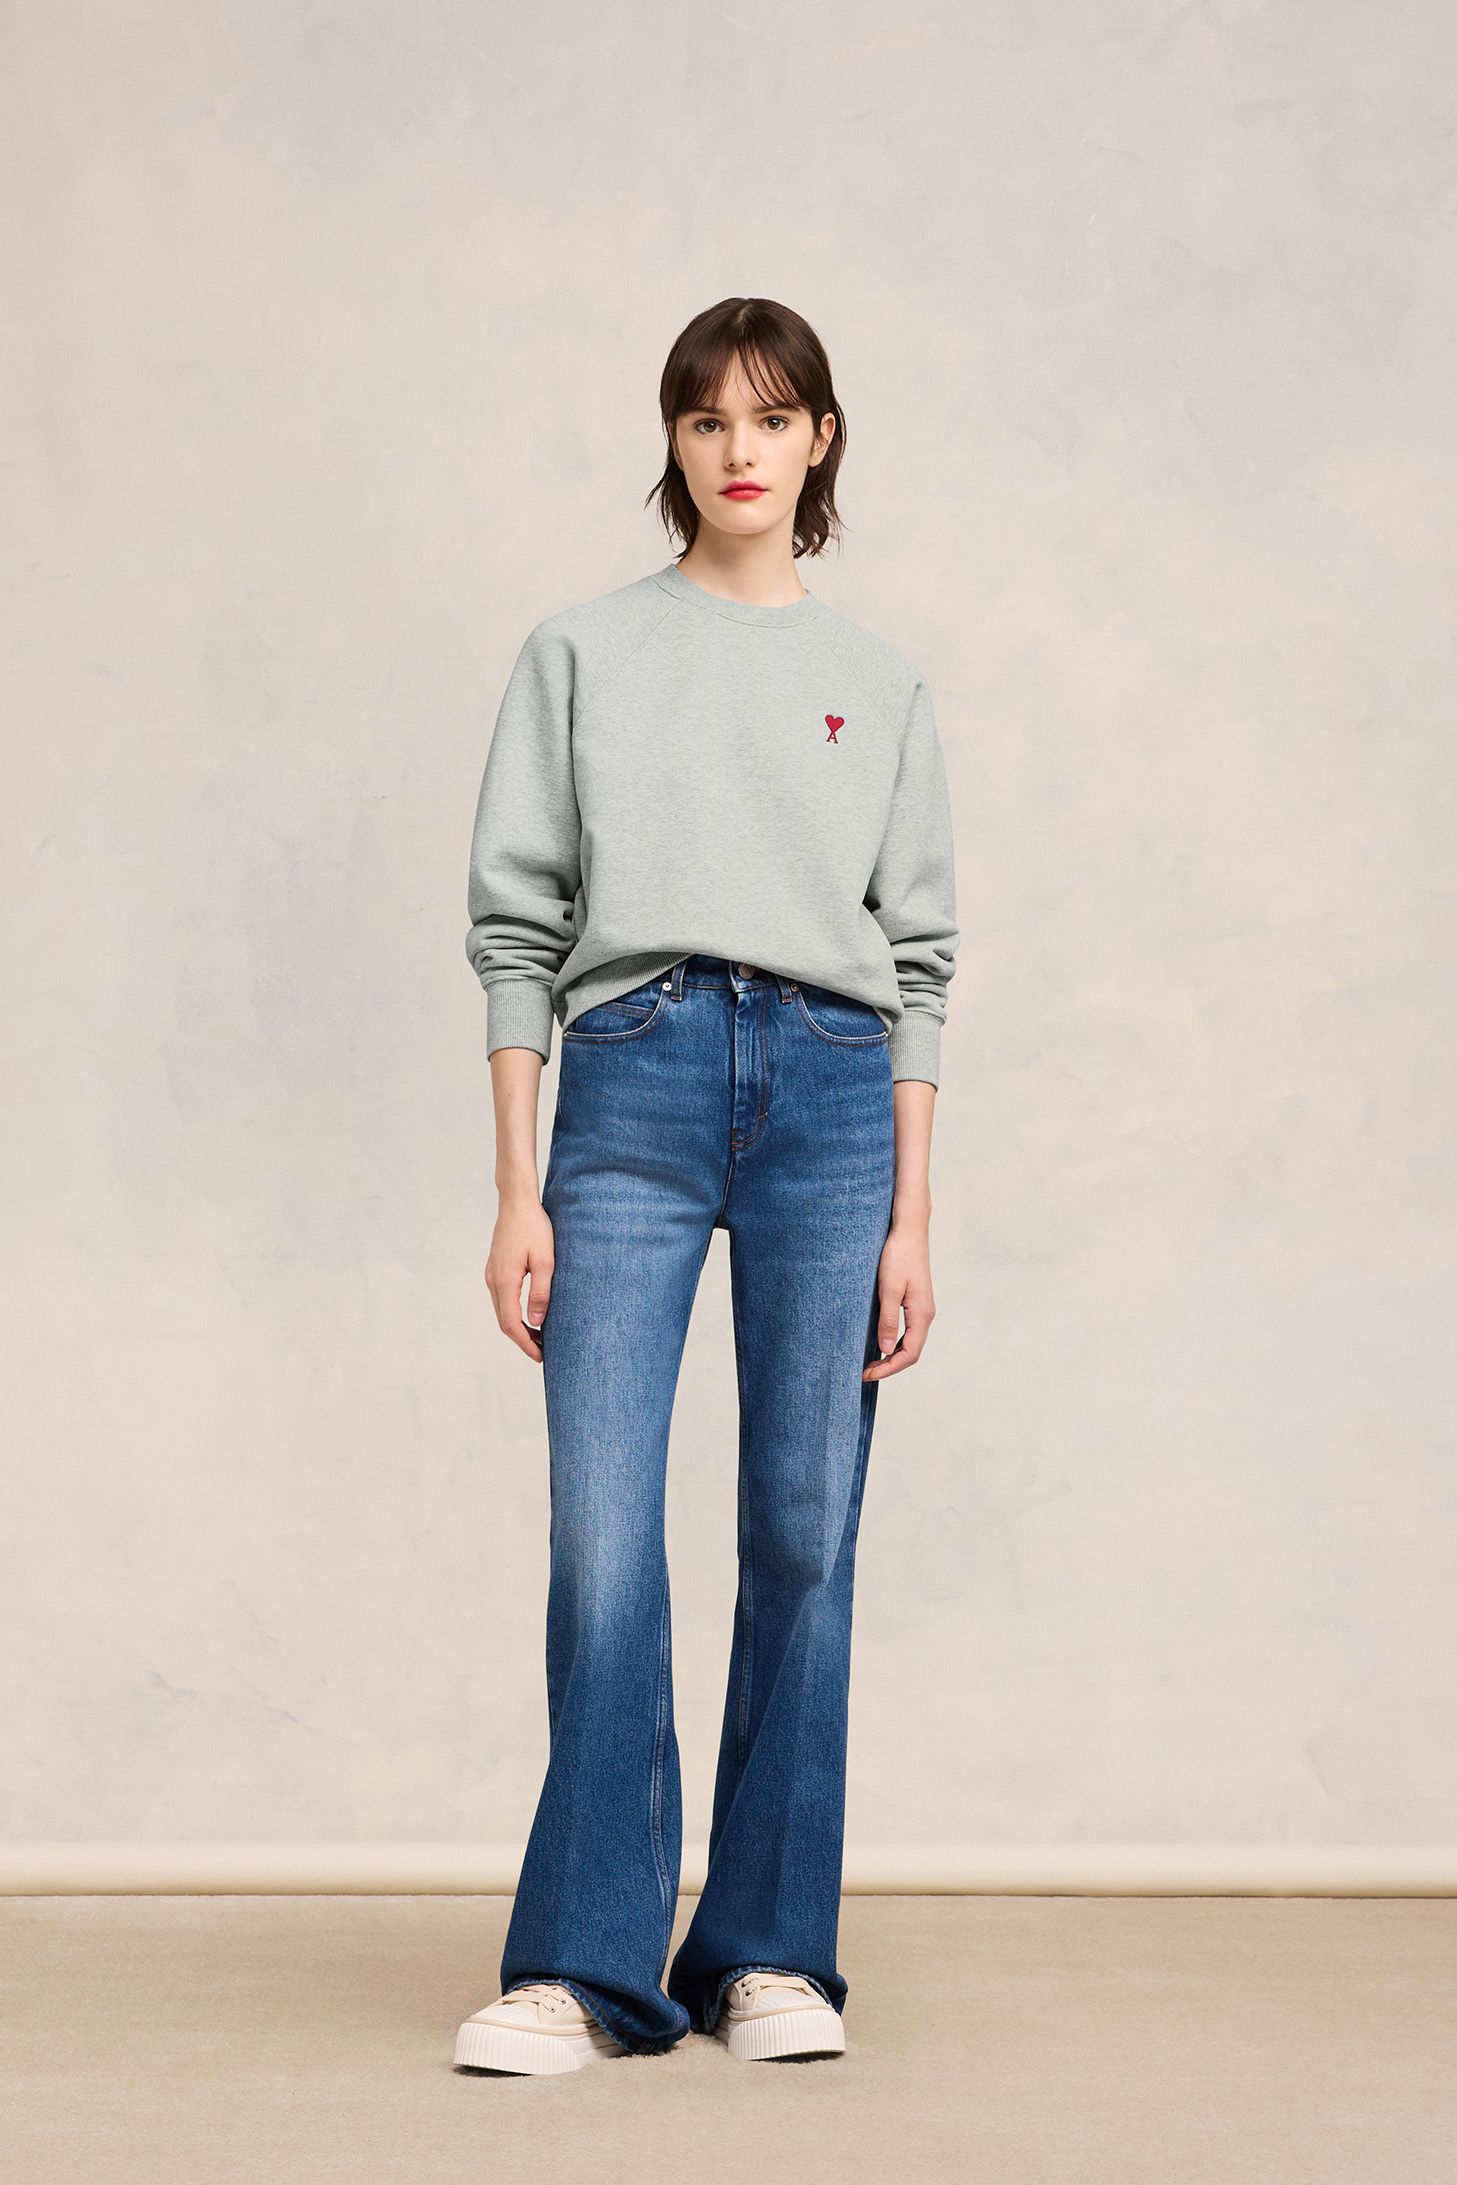 AMI PARIS de Coeur Sweatshirt in Heather Ash Grey XL